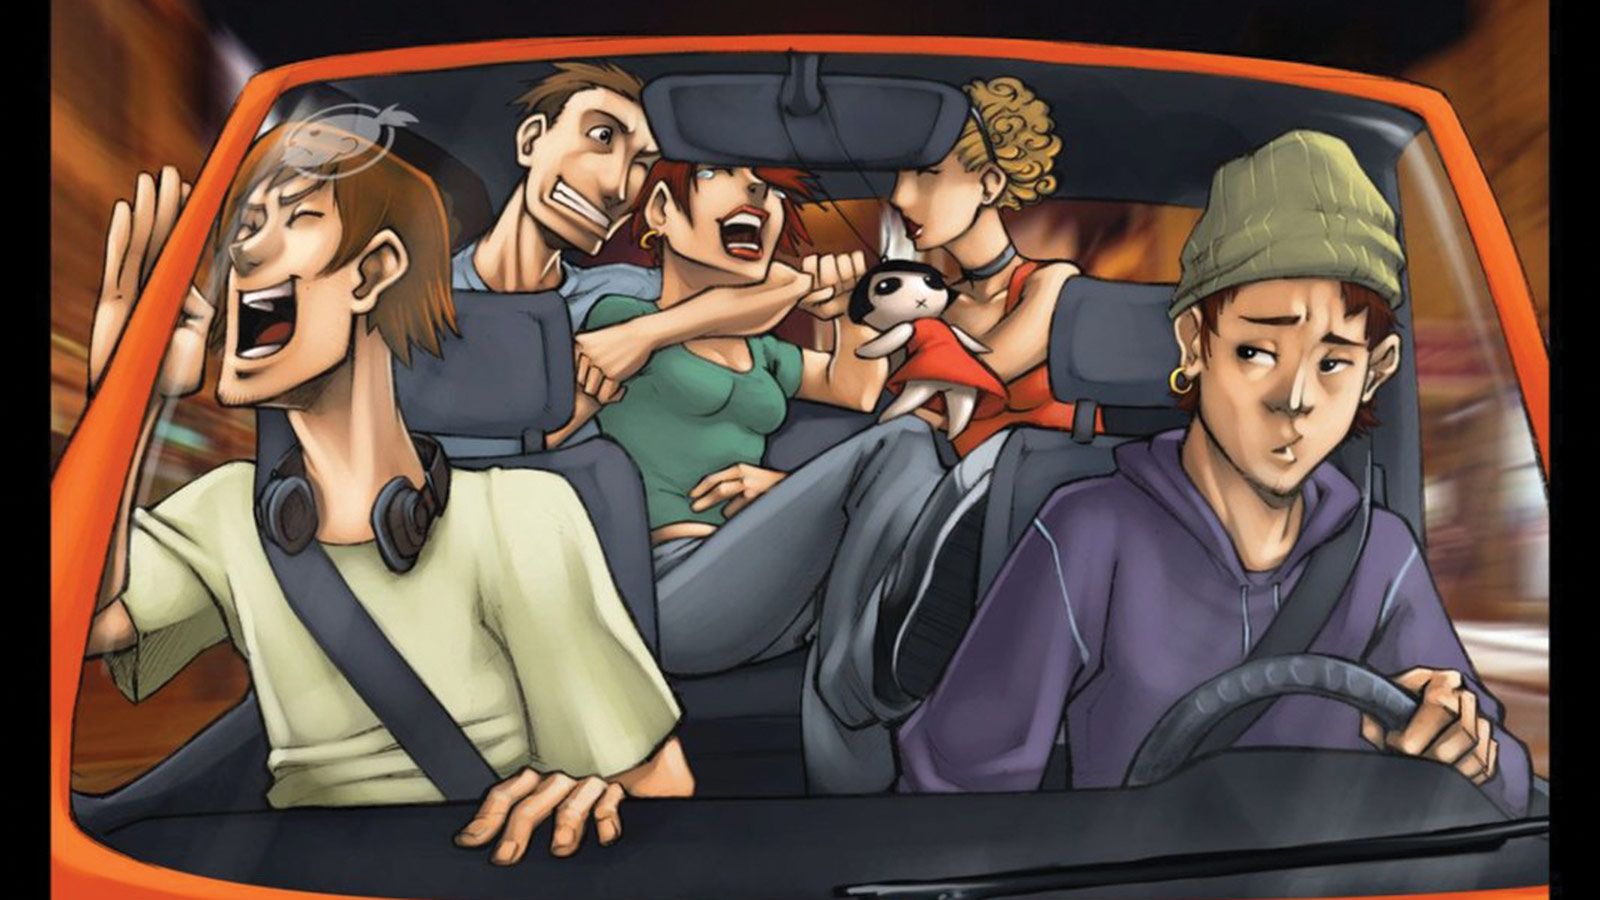 Η καλή διάθεση ανάμεσα σε φίλους είναι εύκολο να μετατρέψει την καμπίνα του αυτοκινήτου σε μίνι πάρτι, κάτι που μπορεί να αποβεί επικίνδυνο.